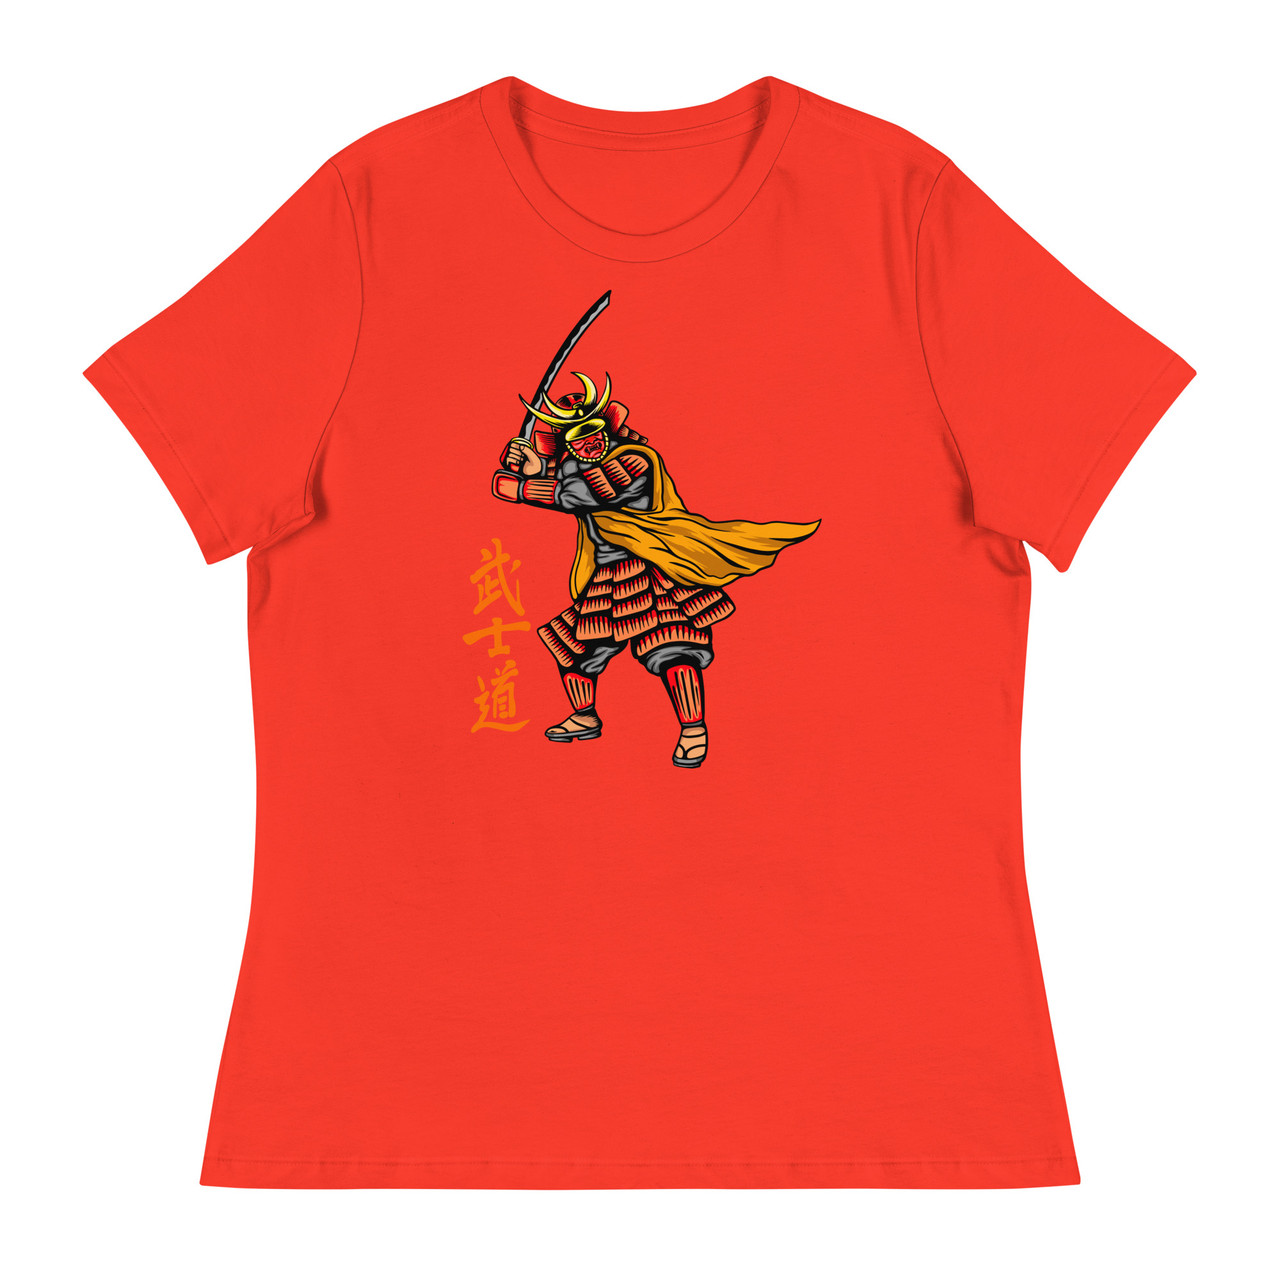 Samurai 22 Women's Relaxed T-Shirt - Bella + Canvas 6400 